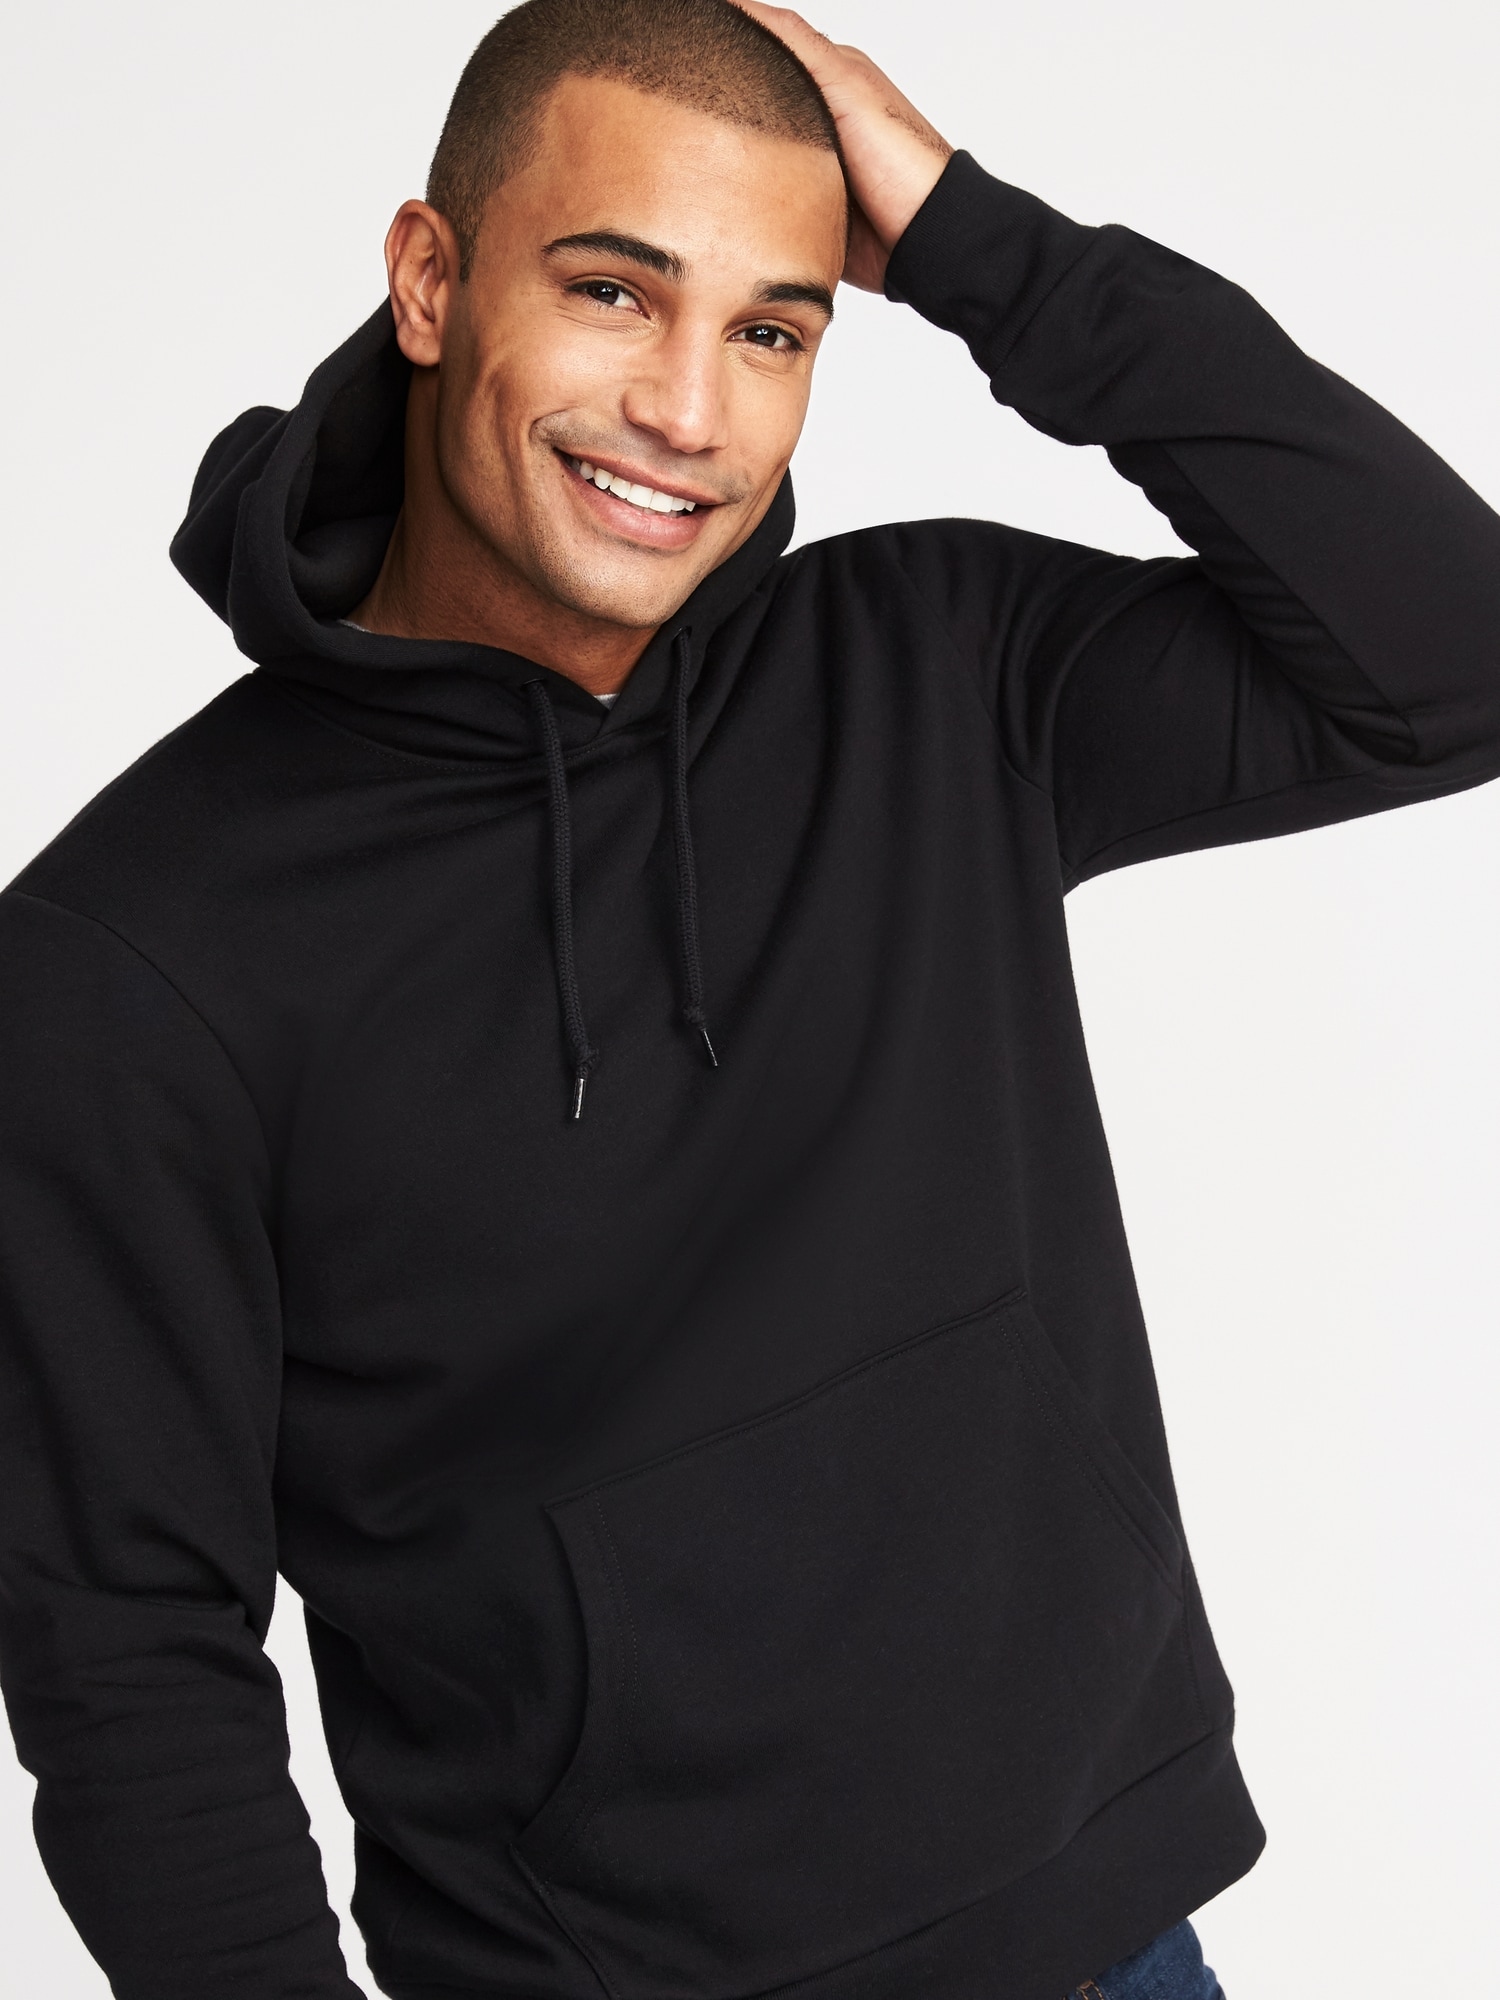 mens black pullover hoodie